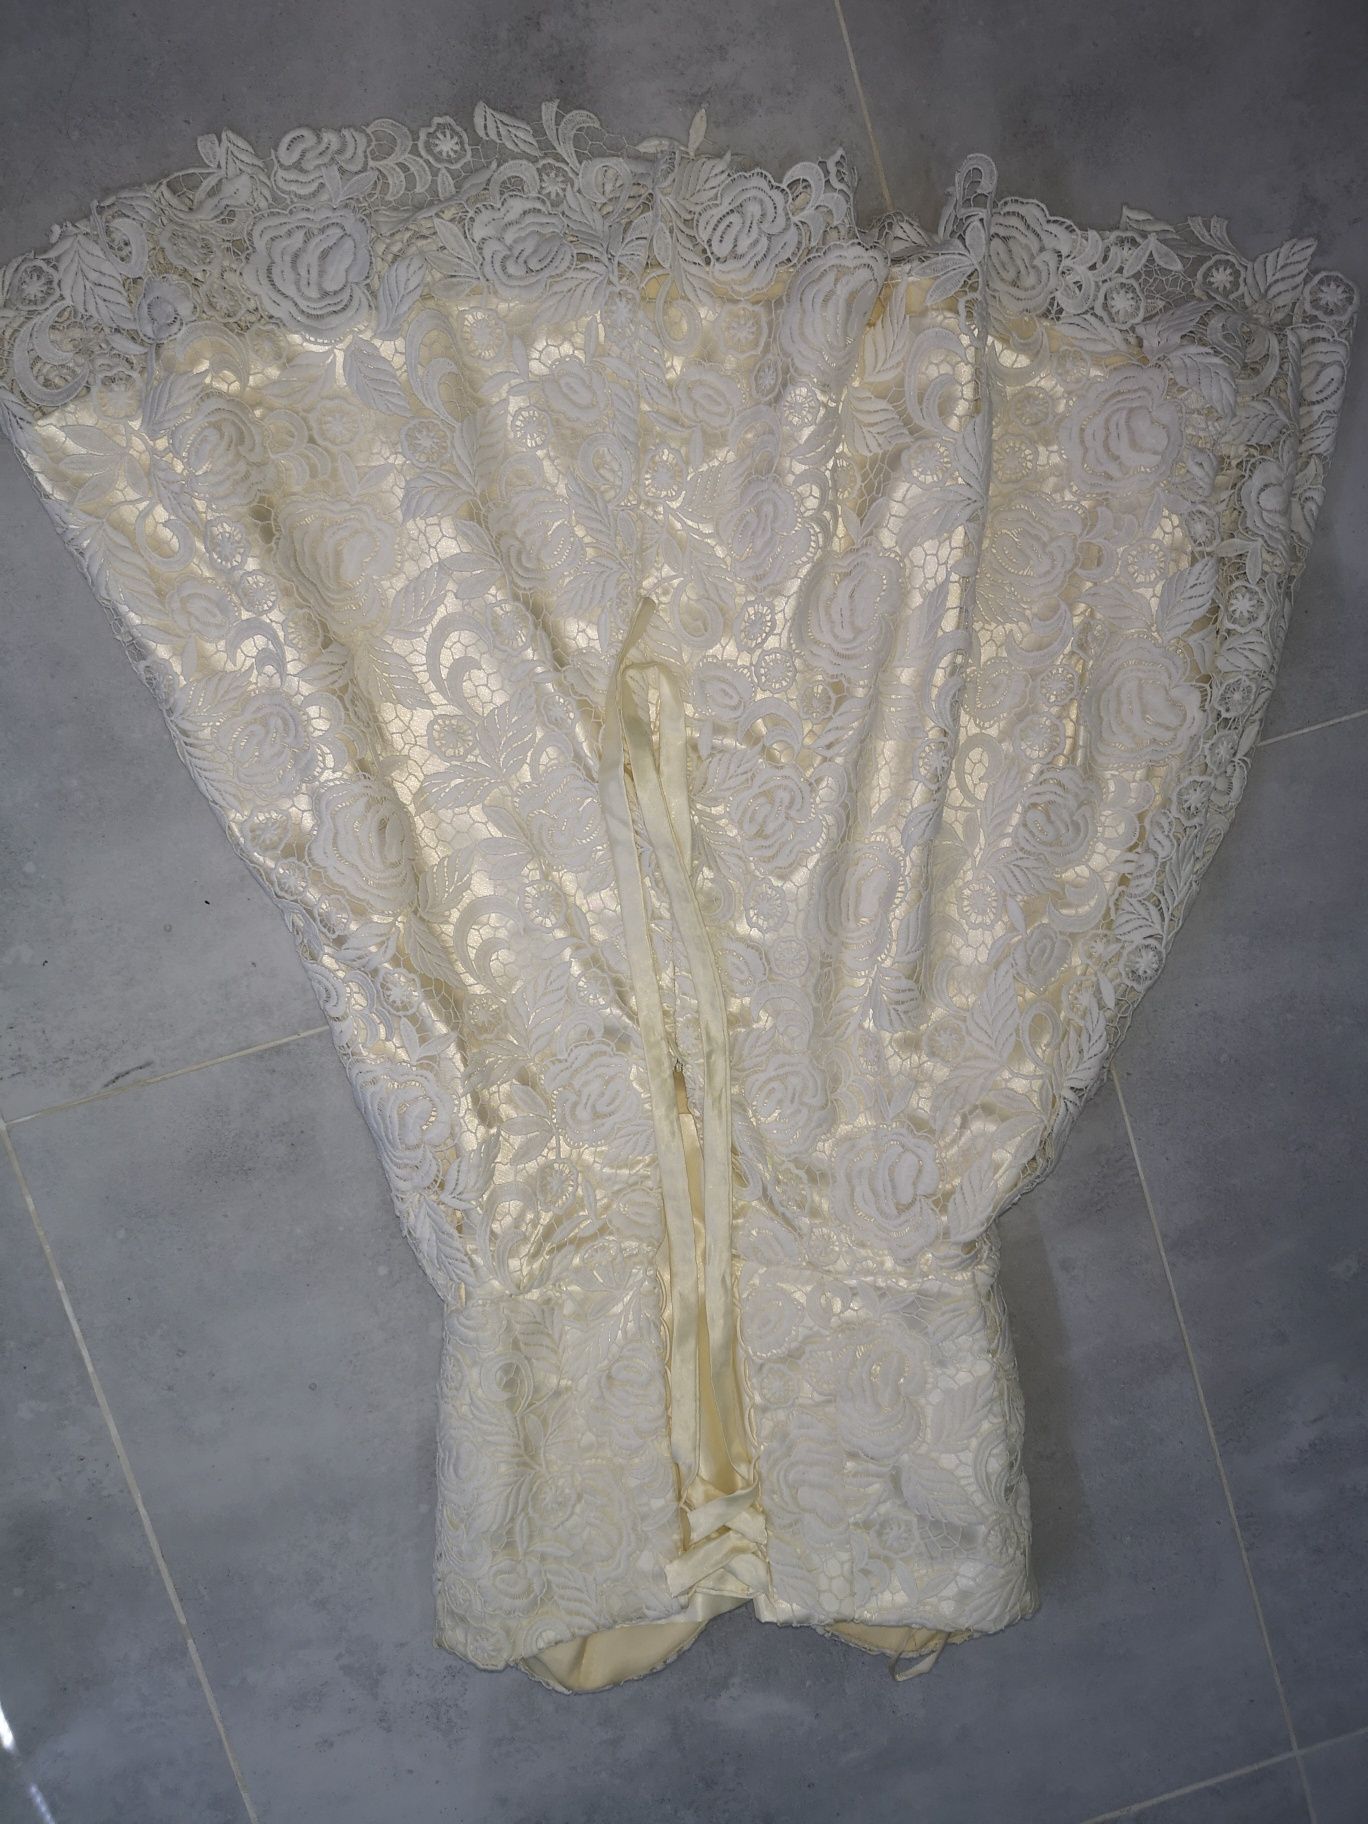 Sukienka suknia 36 S  biała koronka eqru  krótka ślub cywilny